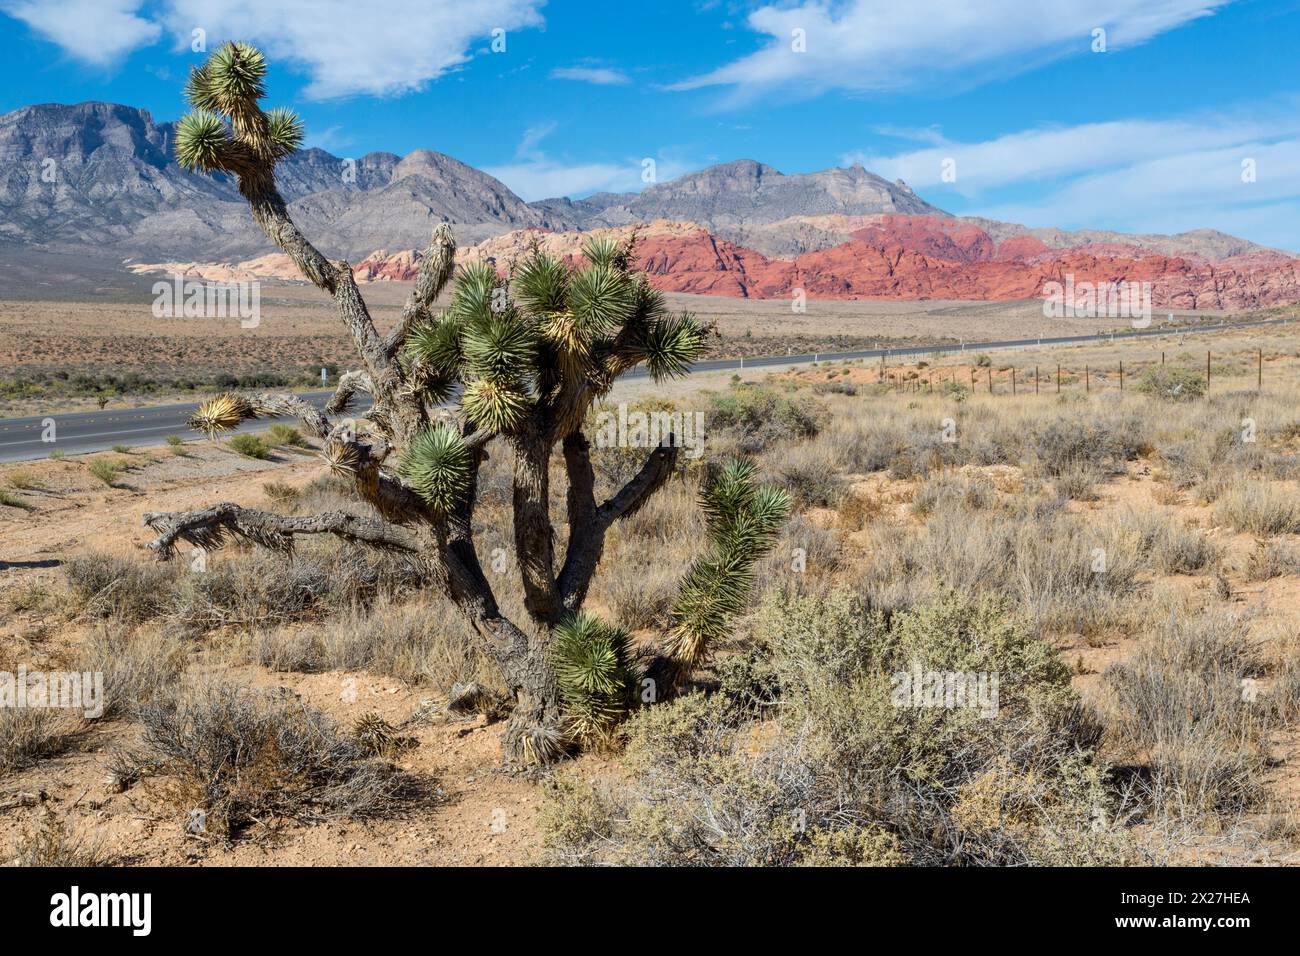 Red Rock Canyon, Nevada. Joshua Tree (Yucca brevifolia). Calico Hills sur la droite, la Keystone en arrière-plan. Banque D'Images